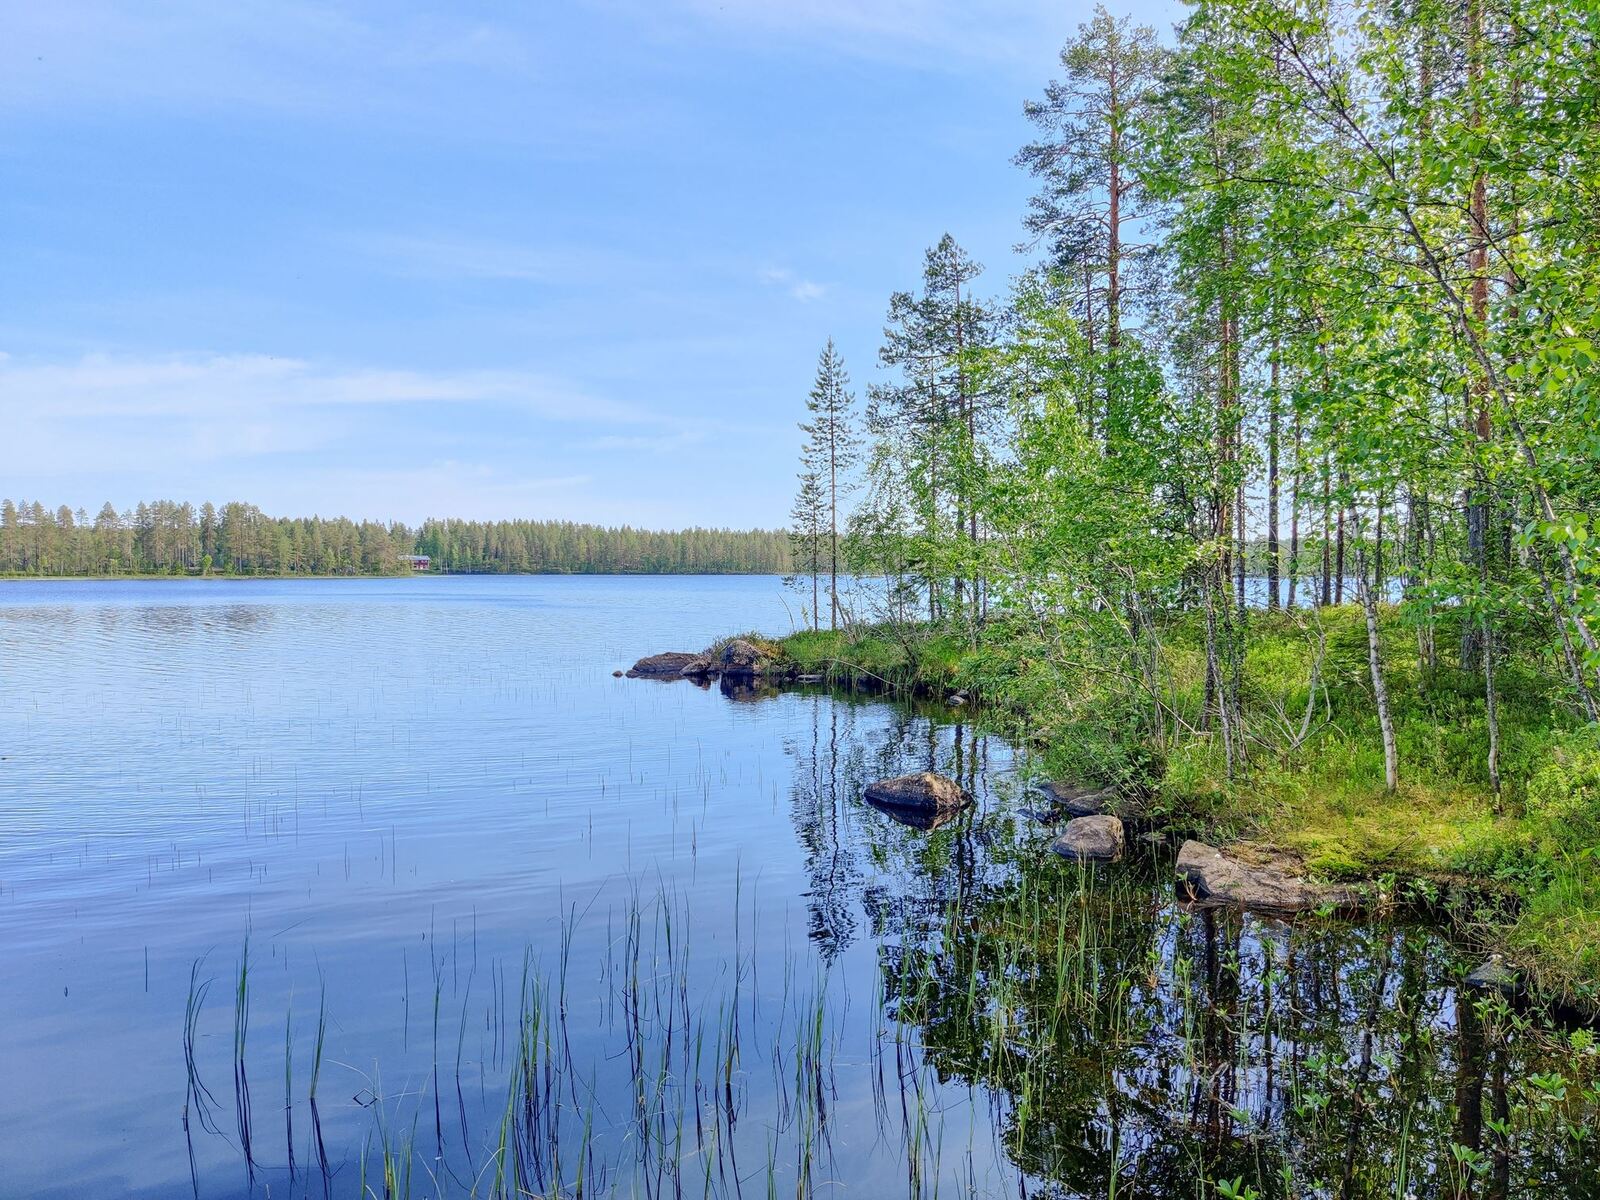 Oikealla niemessä kasvavat kesäiset puut heijastuvat veteen kesäisessä järvimaisemassa.